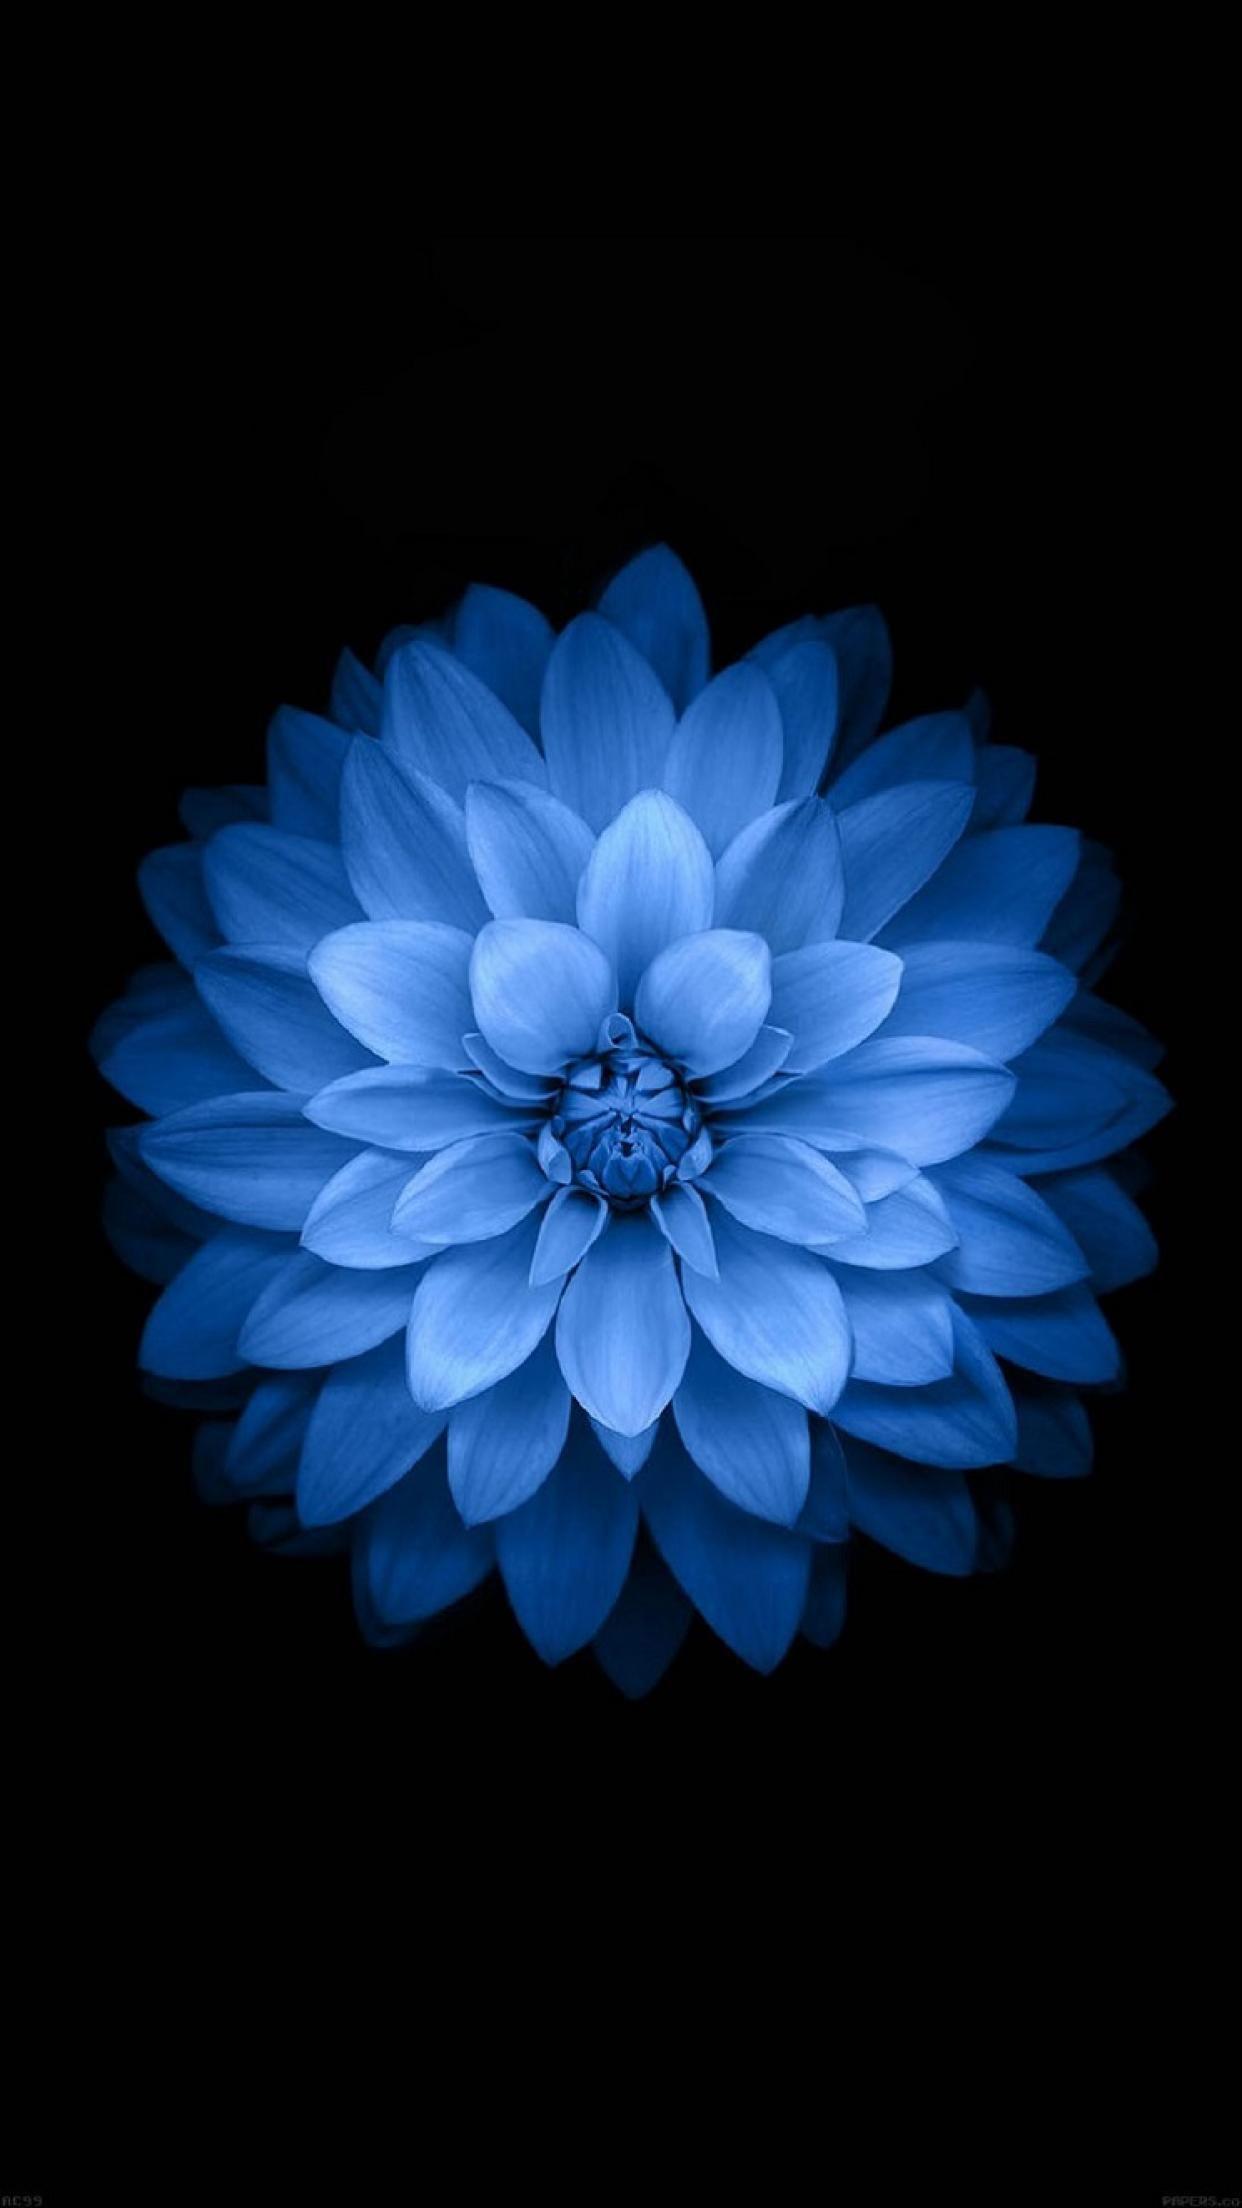 Hoa màu xanh là một trong những loại hoa được yêu thích nhất bởi vẻ đẹp đầy nữ tính và thanh thoát. Xem qua loạt hình ảnh hoa màu xanh tuyệt đẹp này, bạn sẽ được những gợi ý tuyệt vời để trang trí vườn hoa của mình.